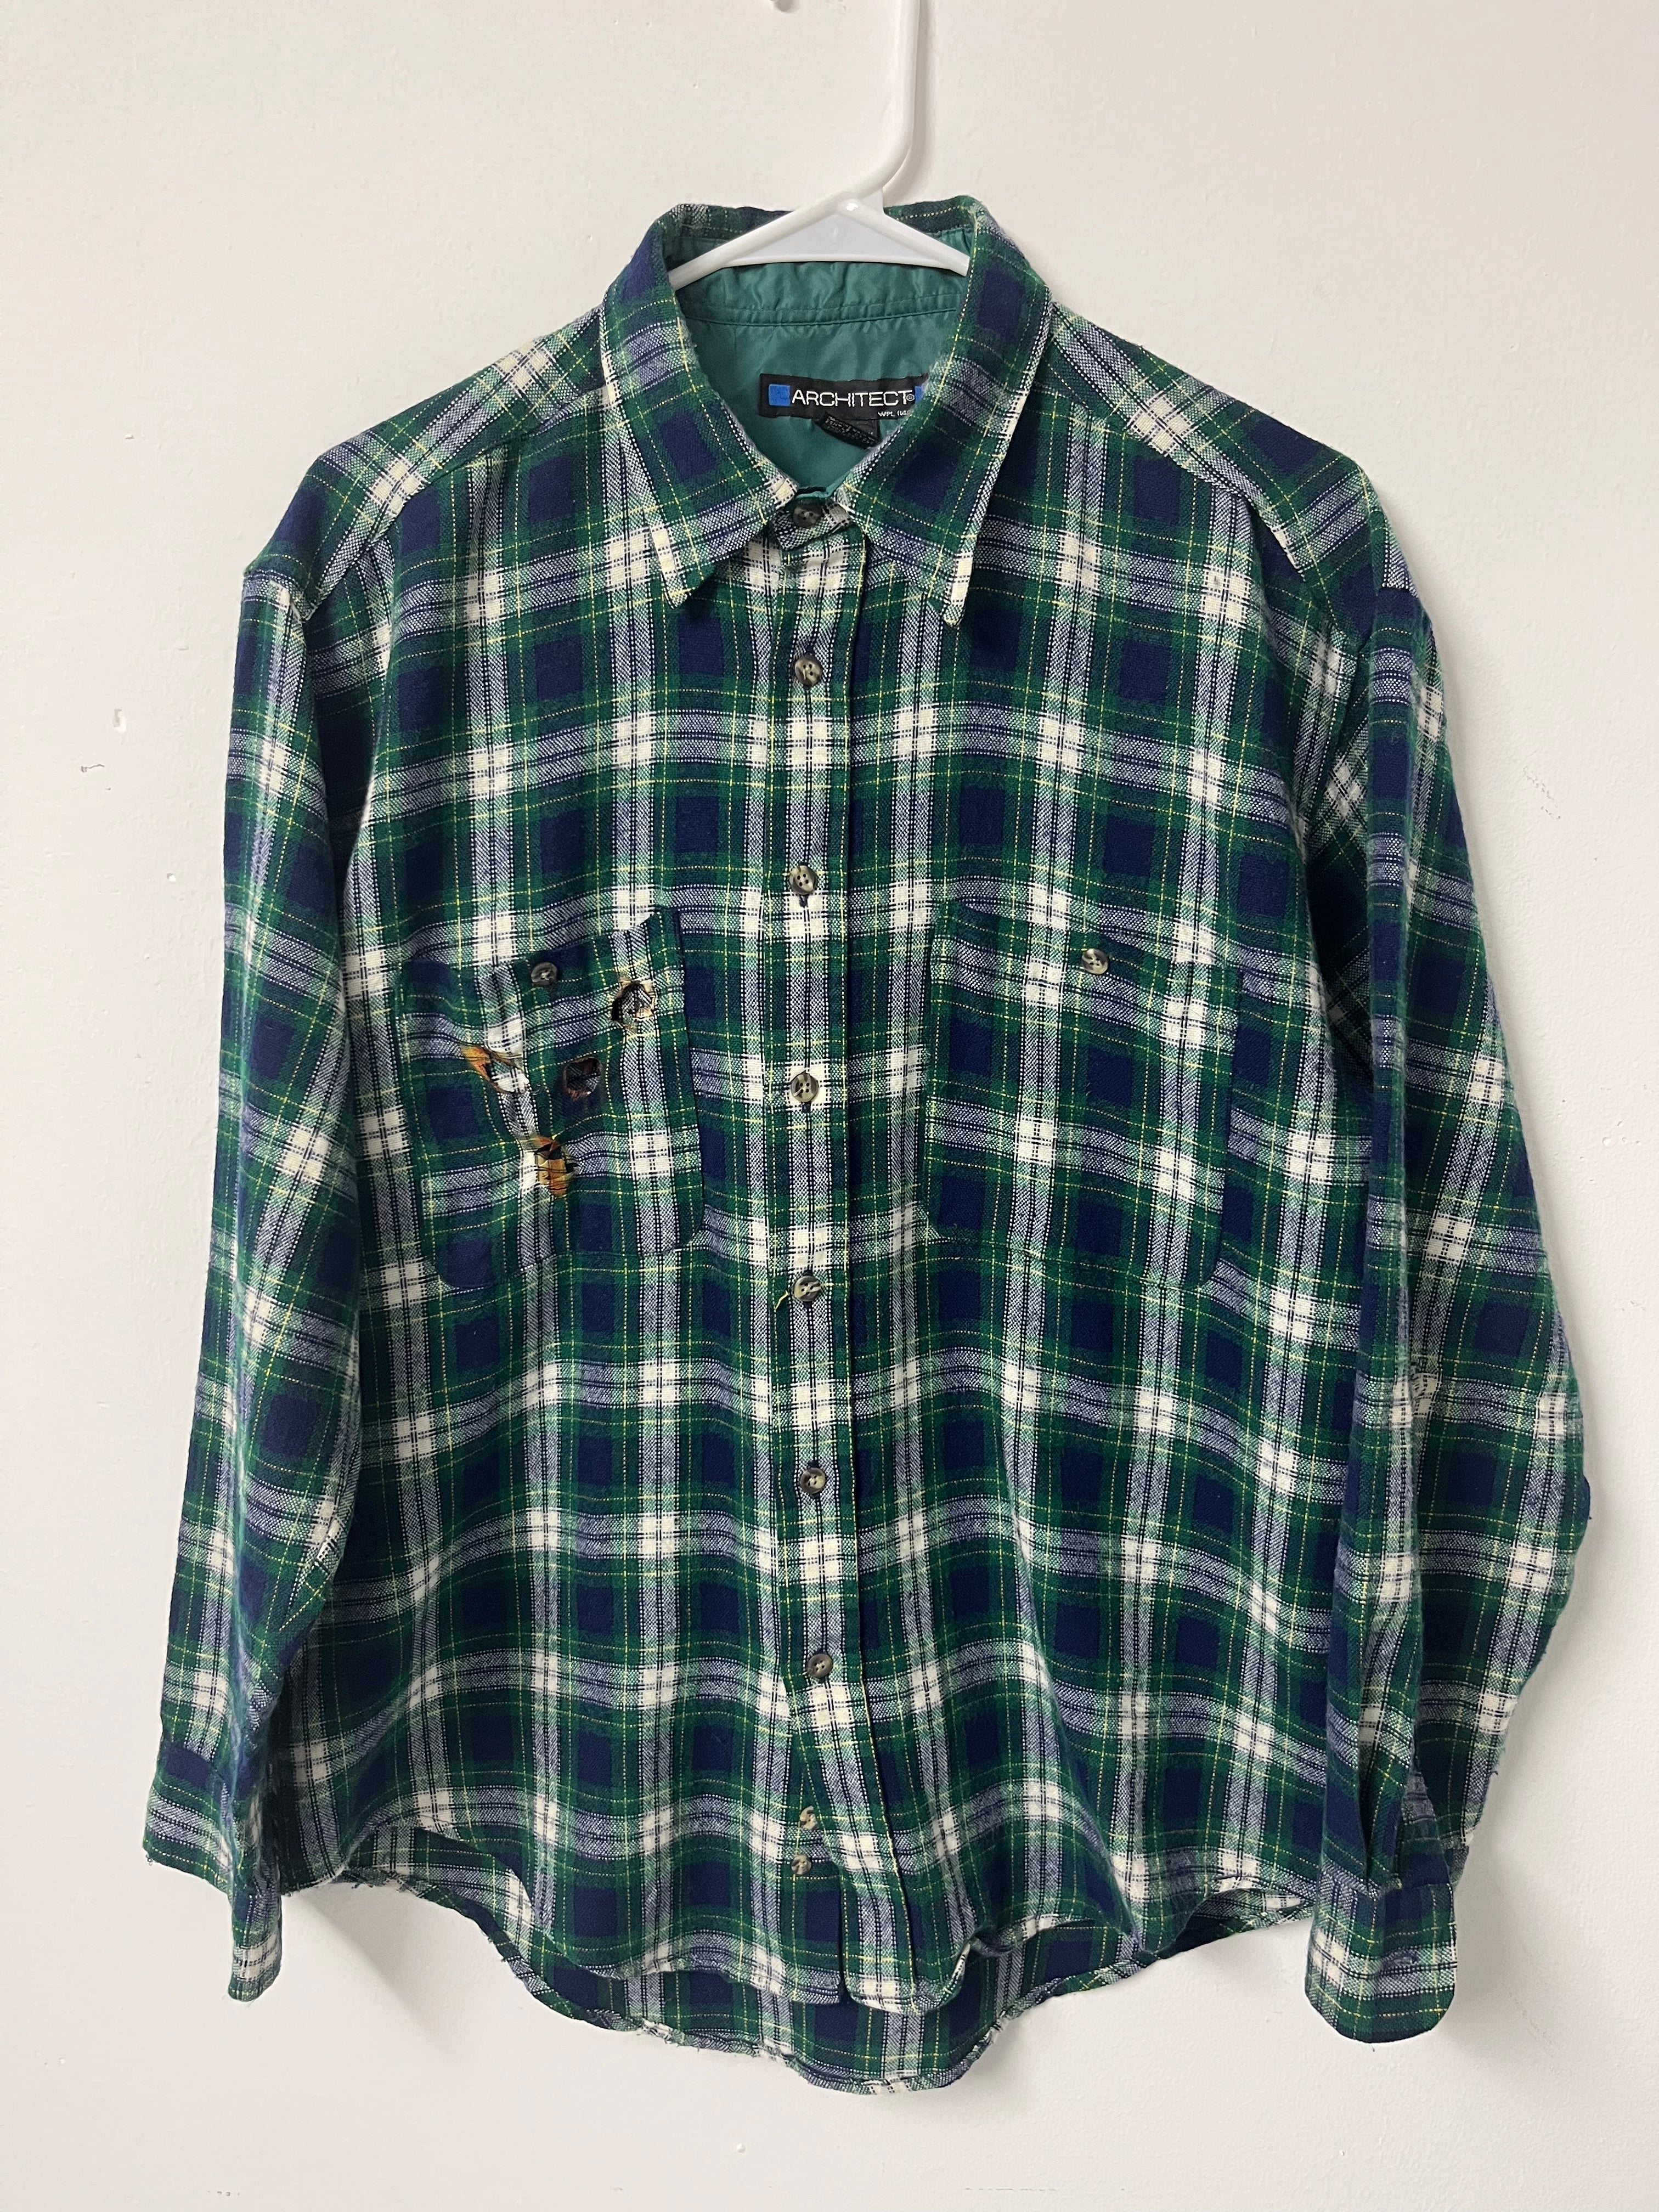 90s Burned Pocket Flannel - Green/Navy - M/L